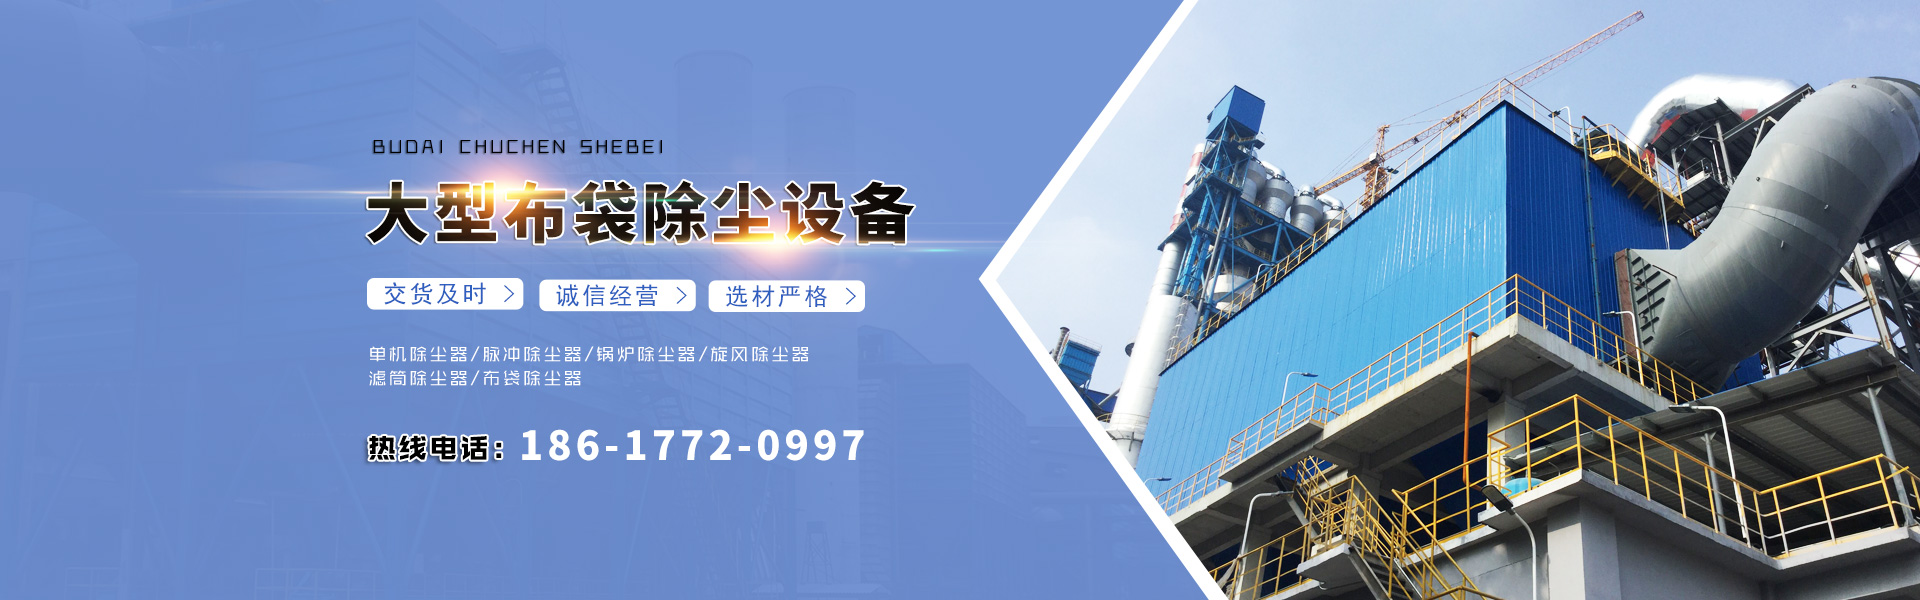 天津市泰立源鋼材銷售有限公司 